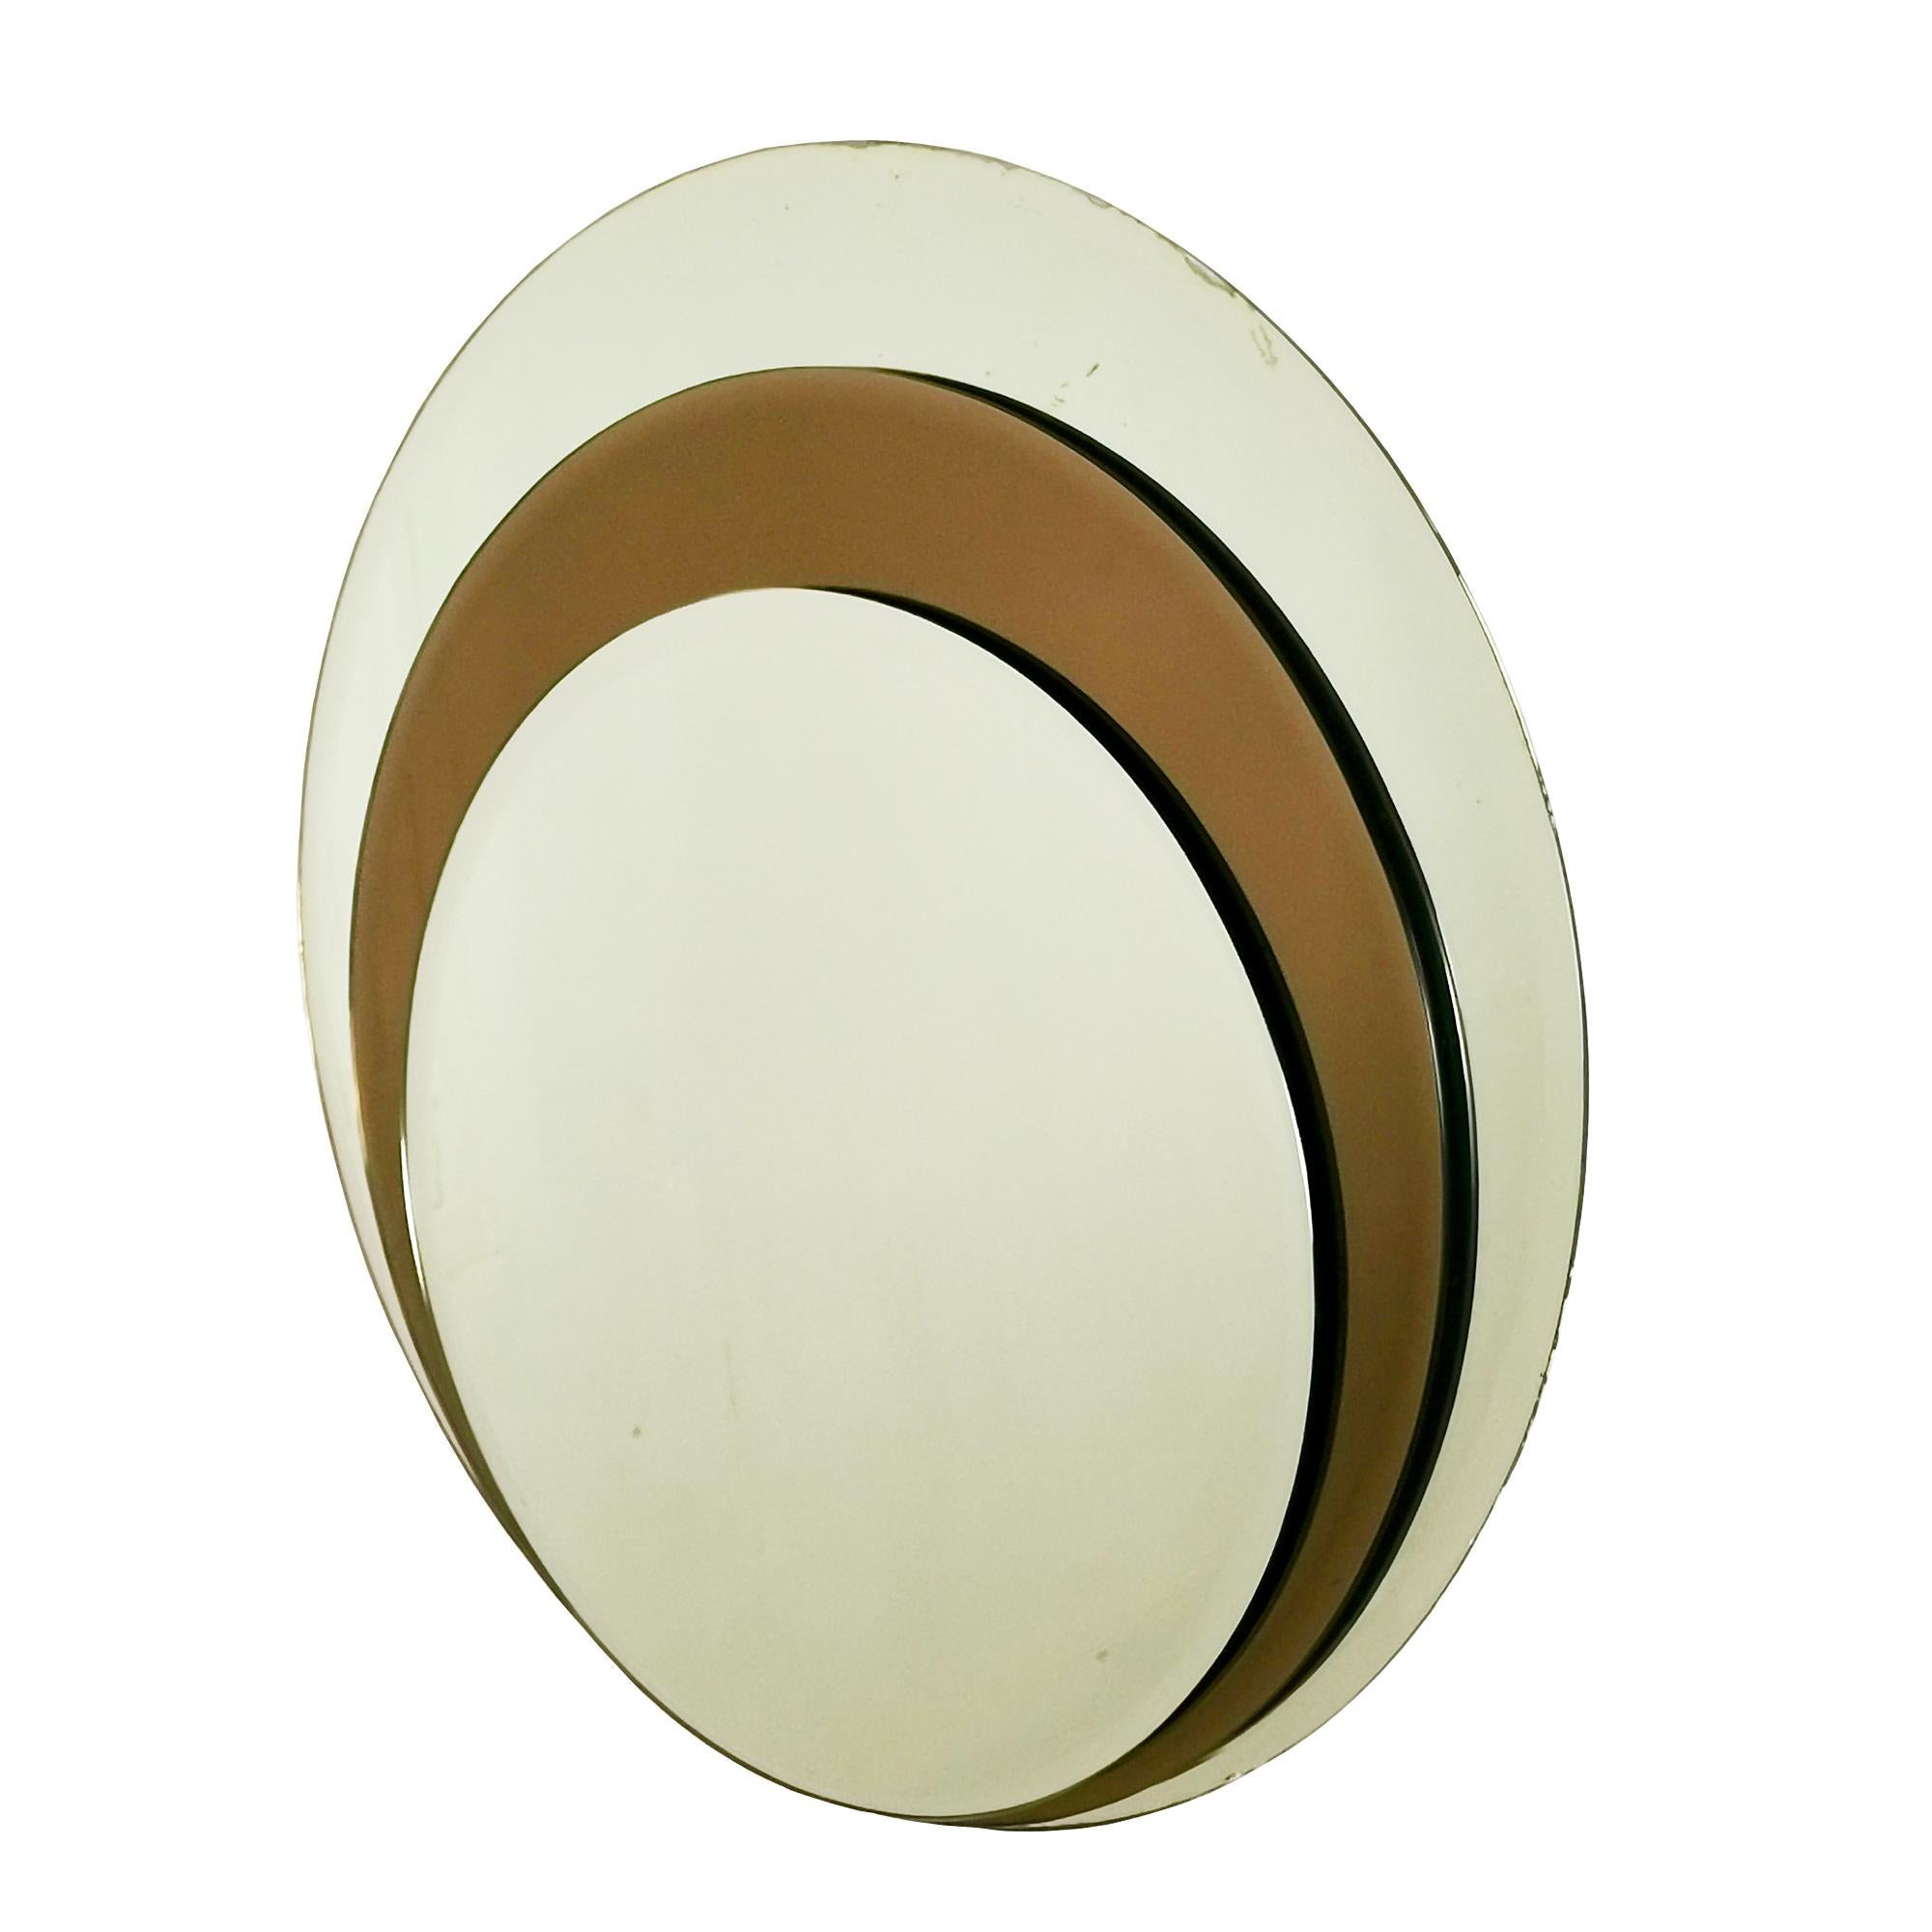 Runder Wandspiegel, bestehend aus drei übereinander angeordneten abgeschrägten Spiegeln, abwechselnd weiß und bronzefarben. Oxidationsspuren an den Rändern.
Italien um 1960.